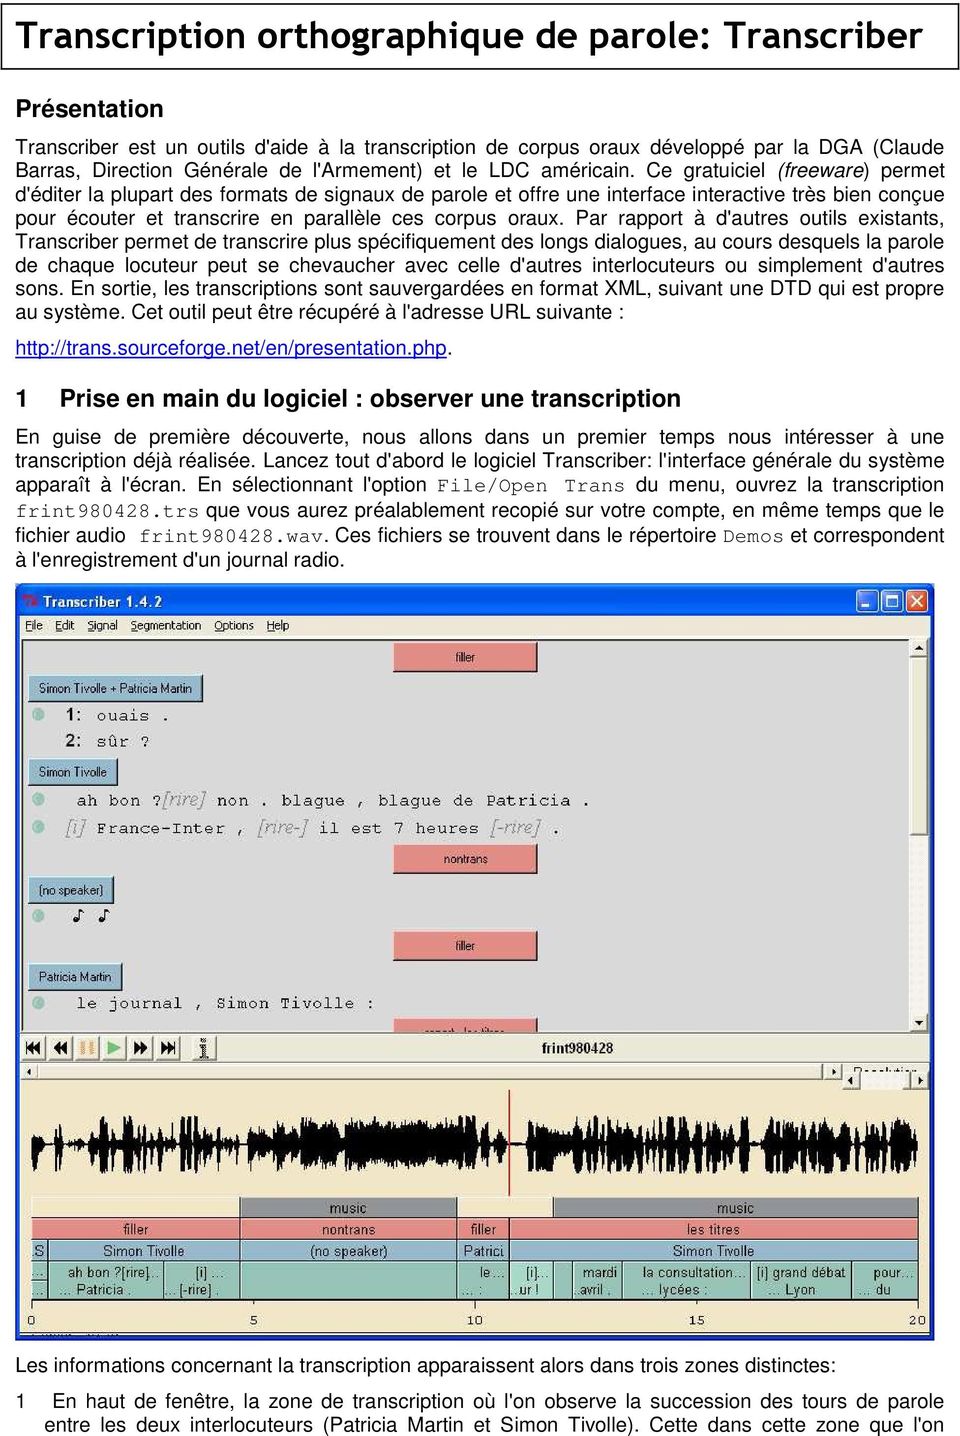 Ce gratuiciel (freeware) permet d'éditer la plupart des formats de signaux de parole et offre une interface interactive très bien conçue pour écouter et transcrire en parallèle ces corpus oraux.